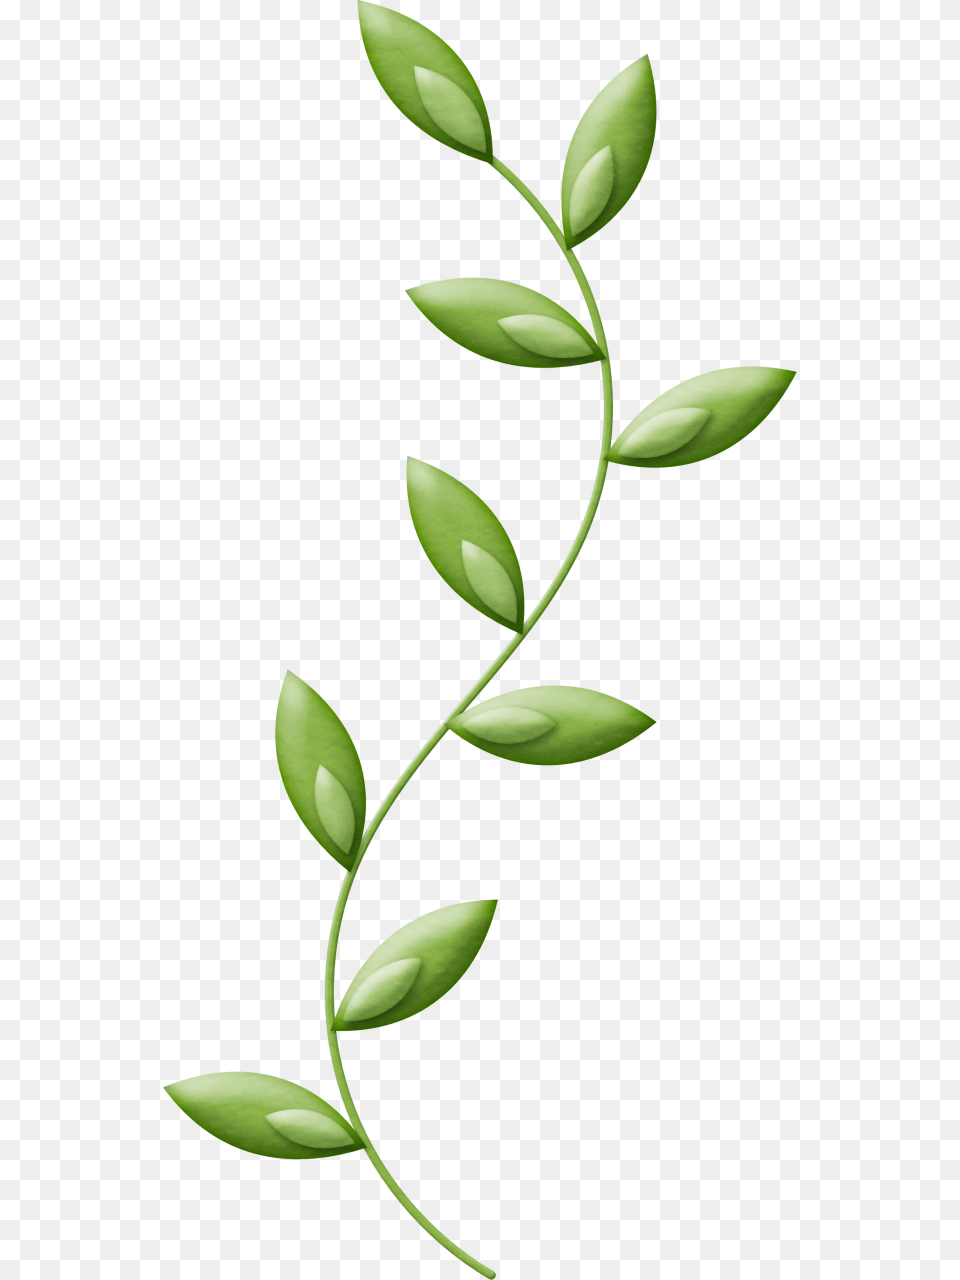 Dia Nacional De La Enfermera Da De La Enfermera, Green, Leaf, Plant, Herbal Png